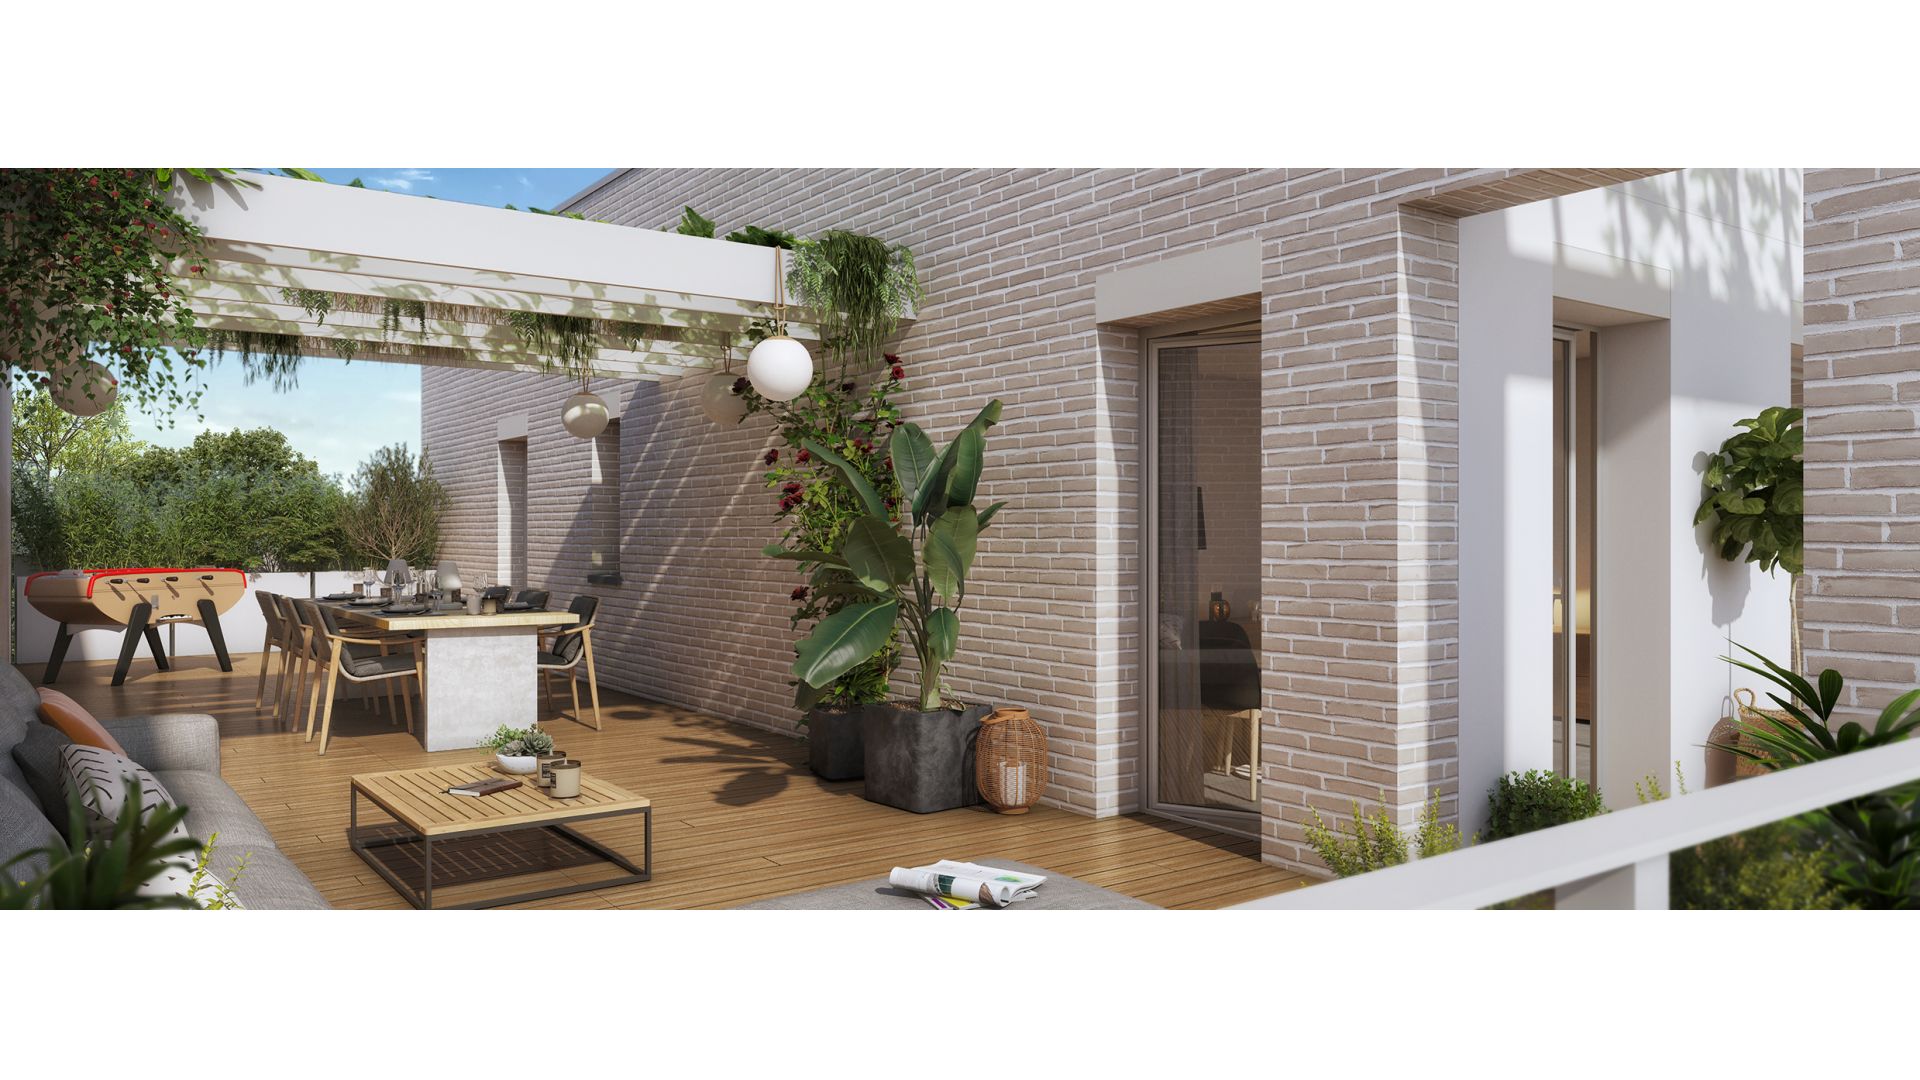 Greencity immobilier - achat appartements et villas neuves du T2 au T5 - Résidence Le Cybèle - 31400 Toulouse Rangueil - vue terrasse